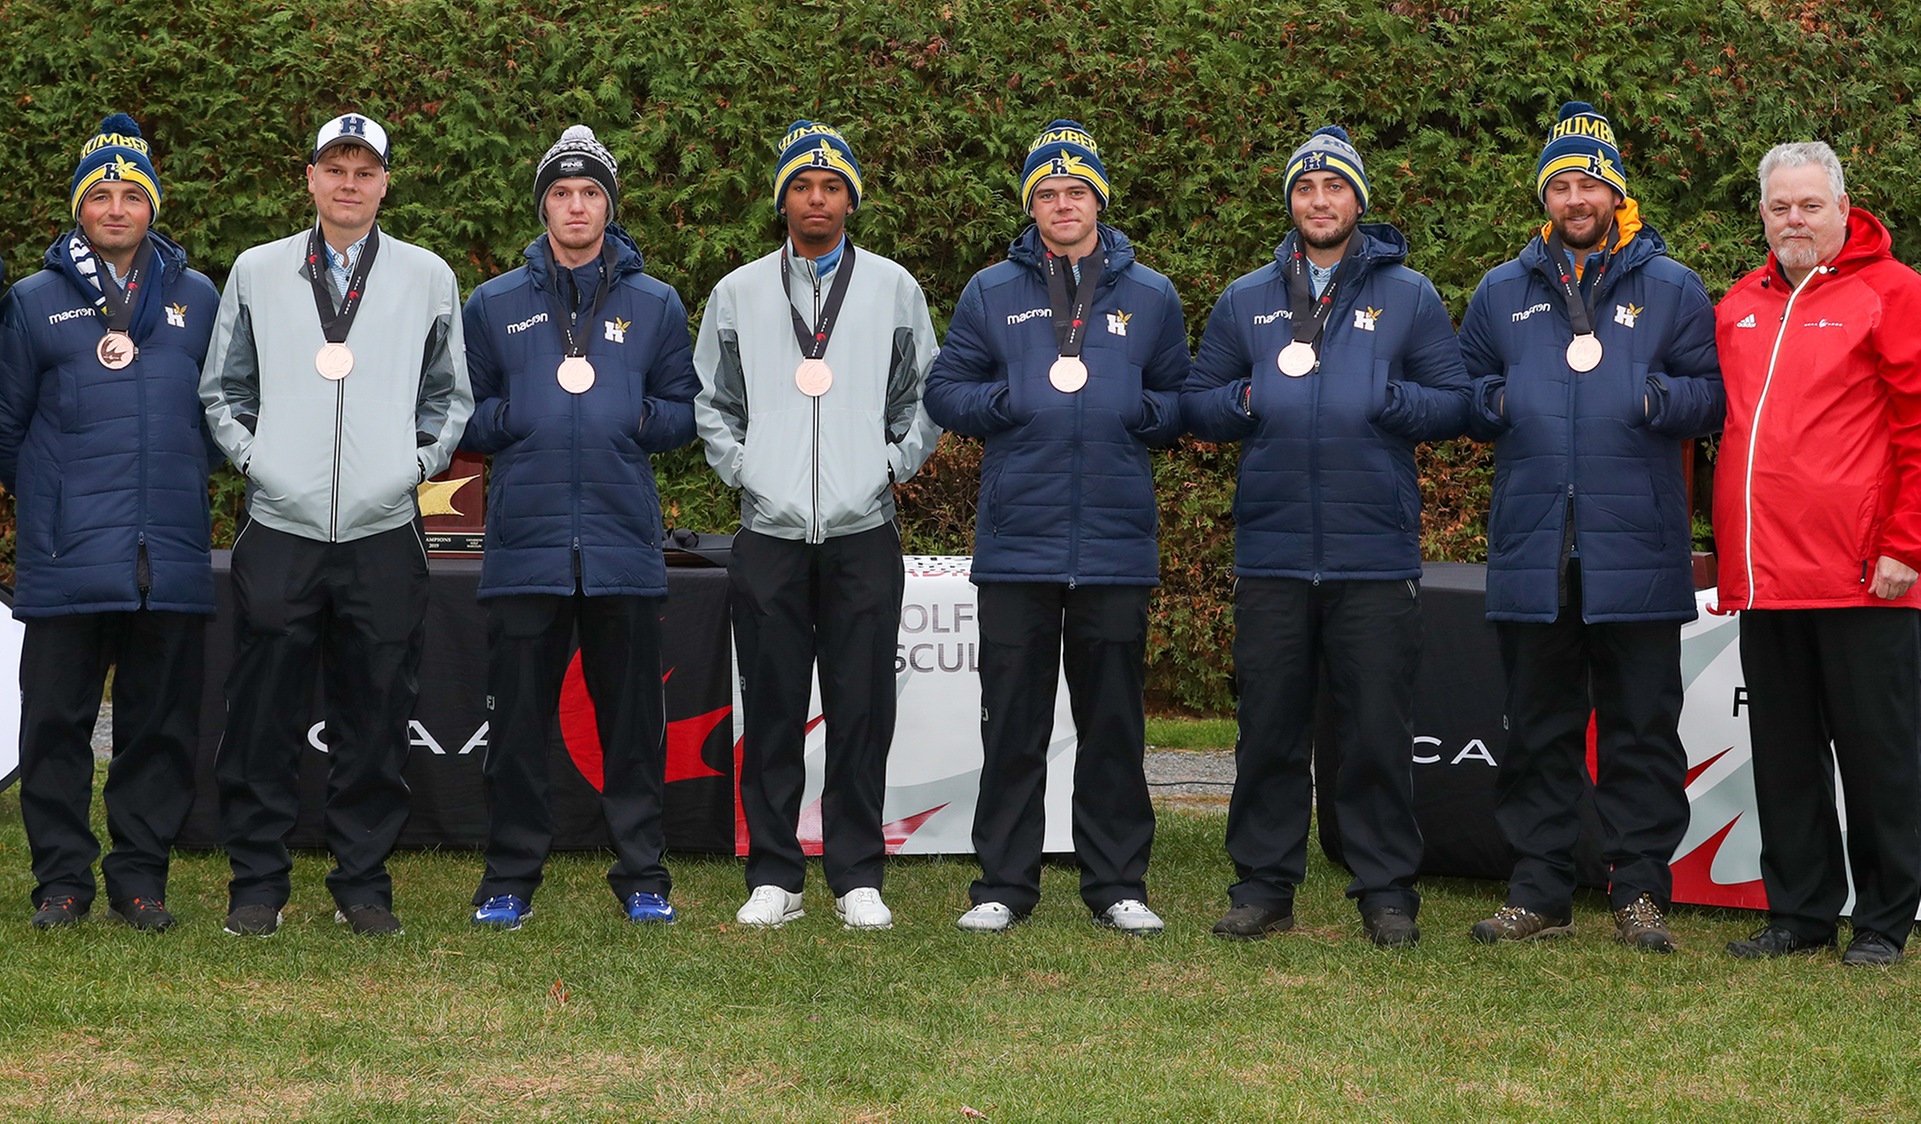 Men's Golf Capture CCAA Bronze Medal in Quebec